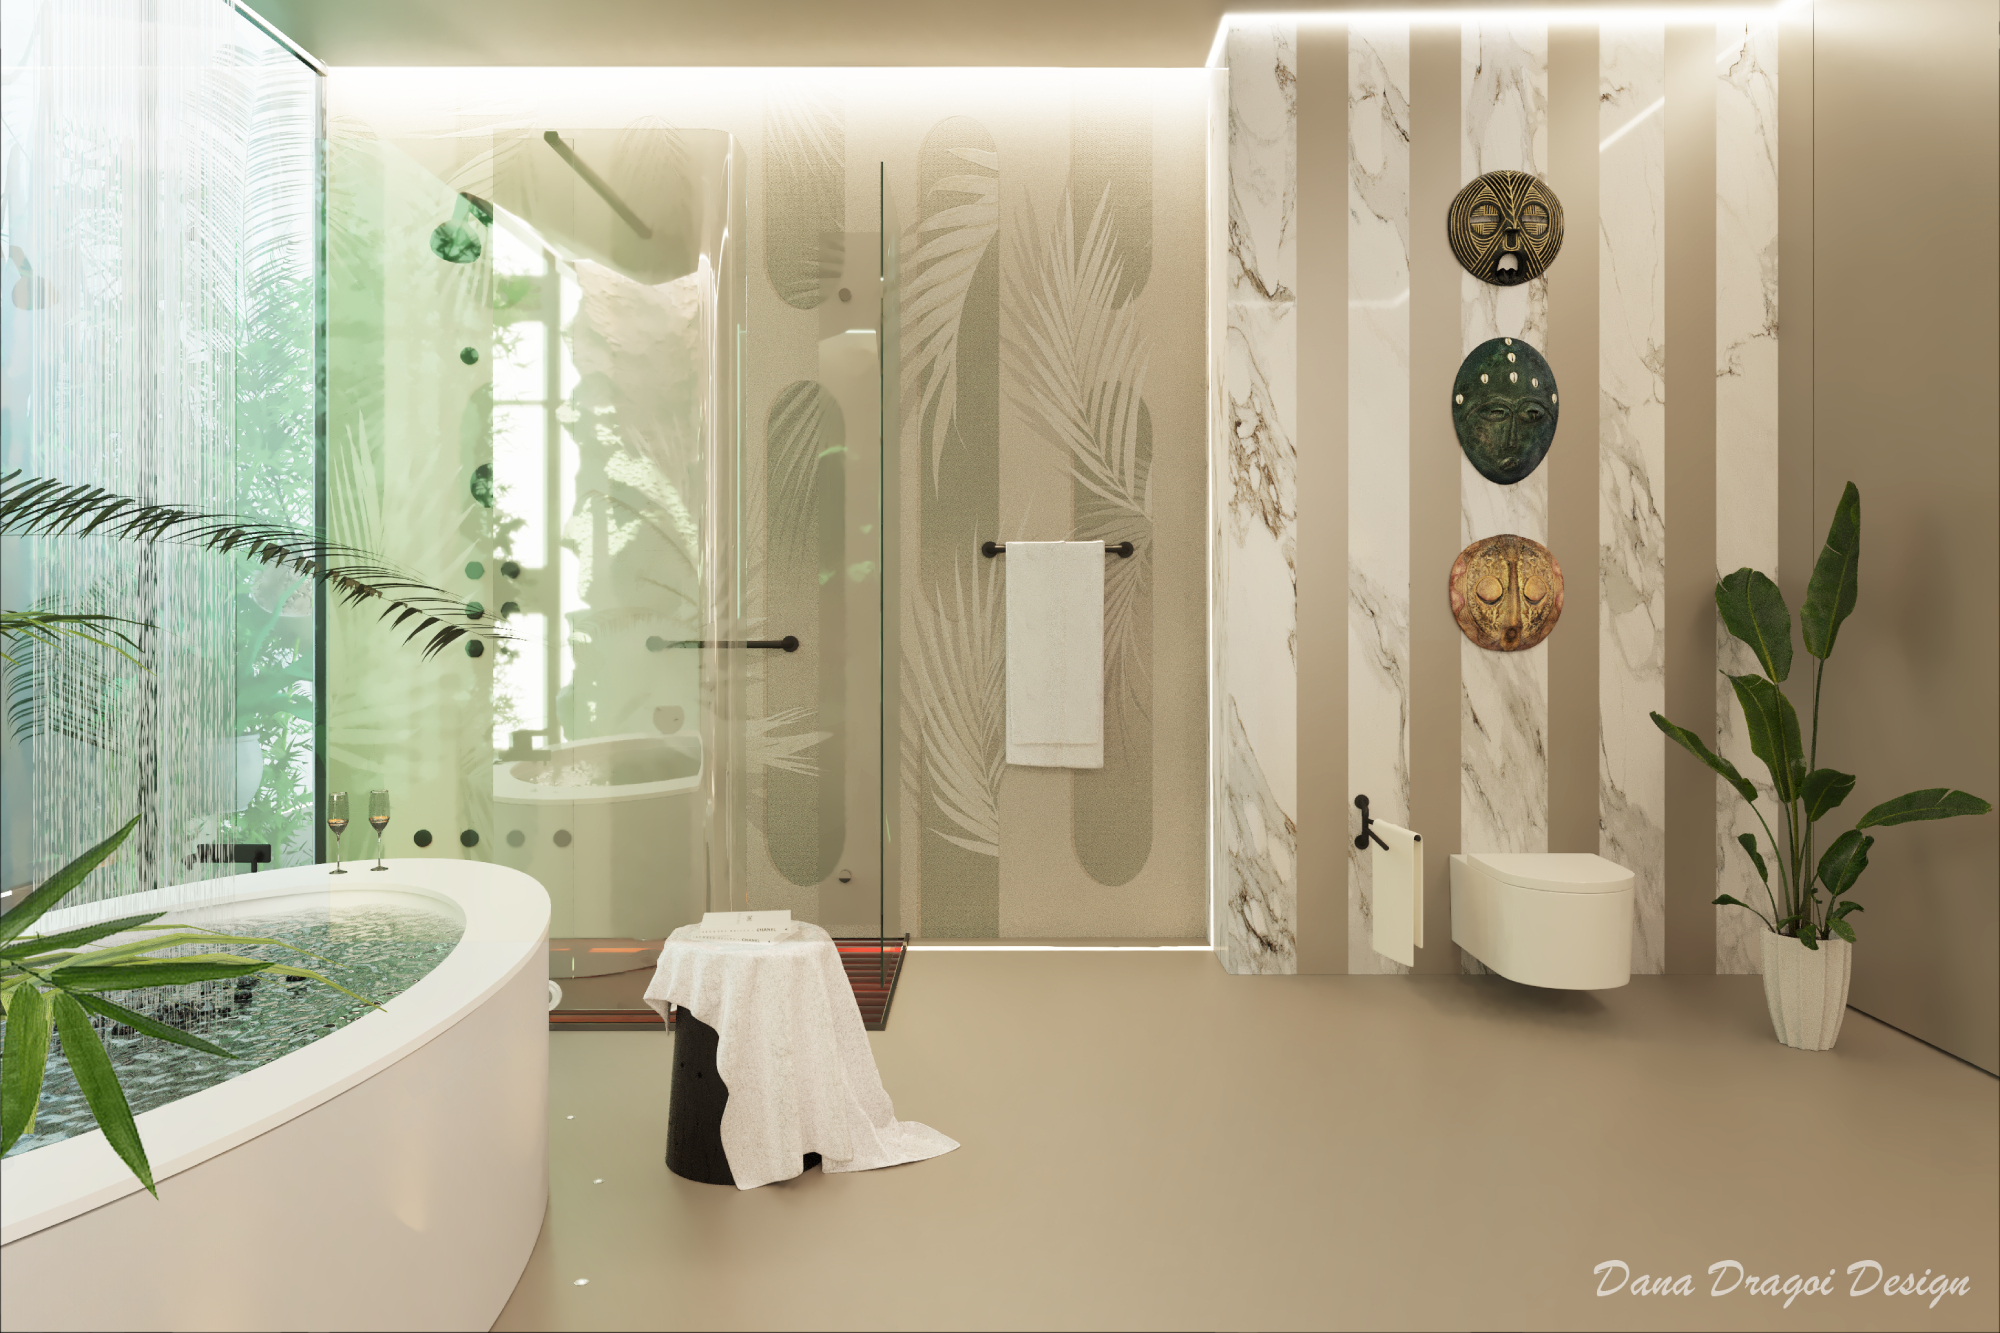 Project “Bali-Style Masterbathroom” by Dana Dragoi Design